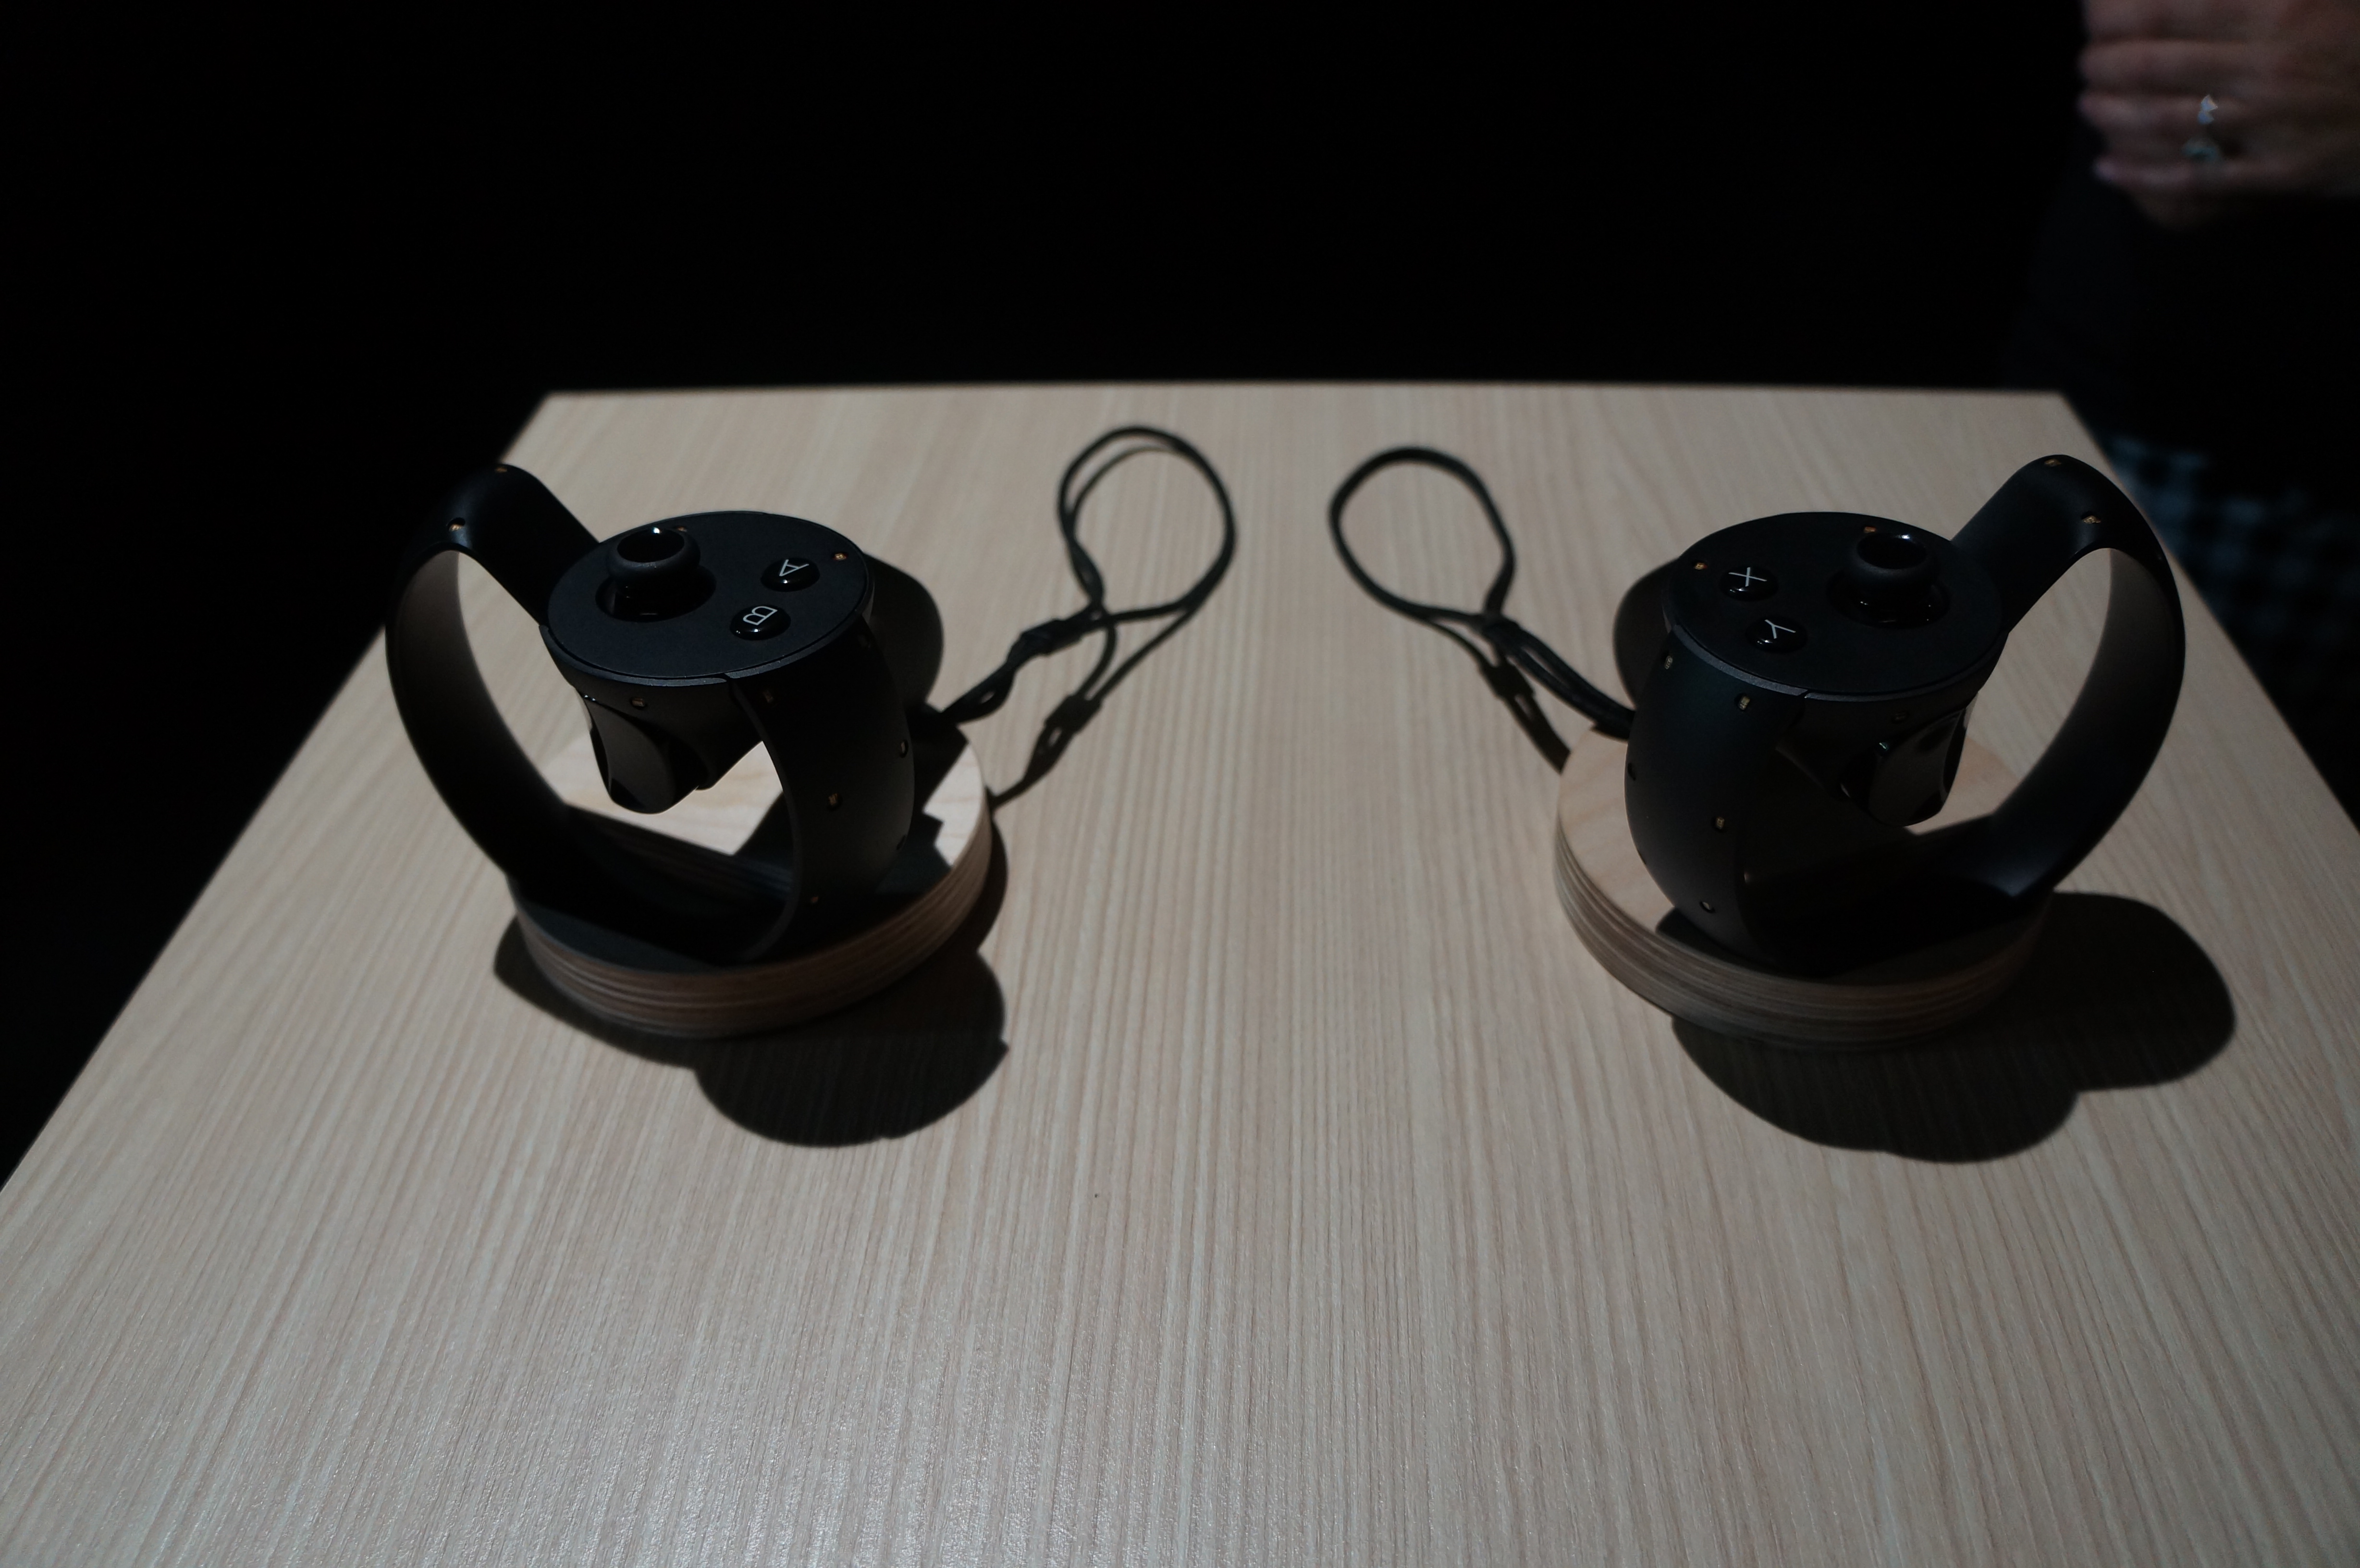 Oculus představil své ovladače, možnosti a hlavně hry 110001